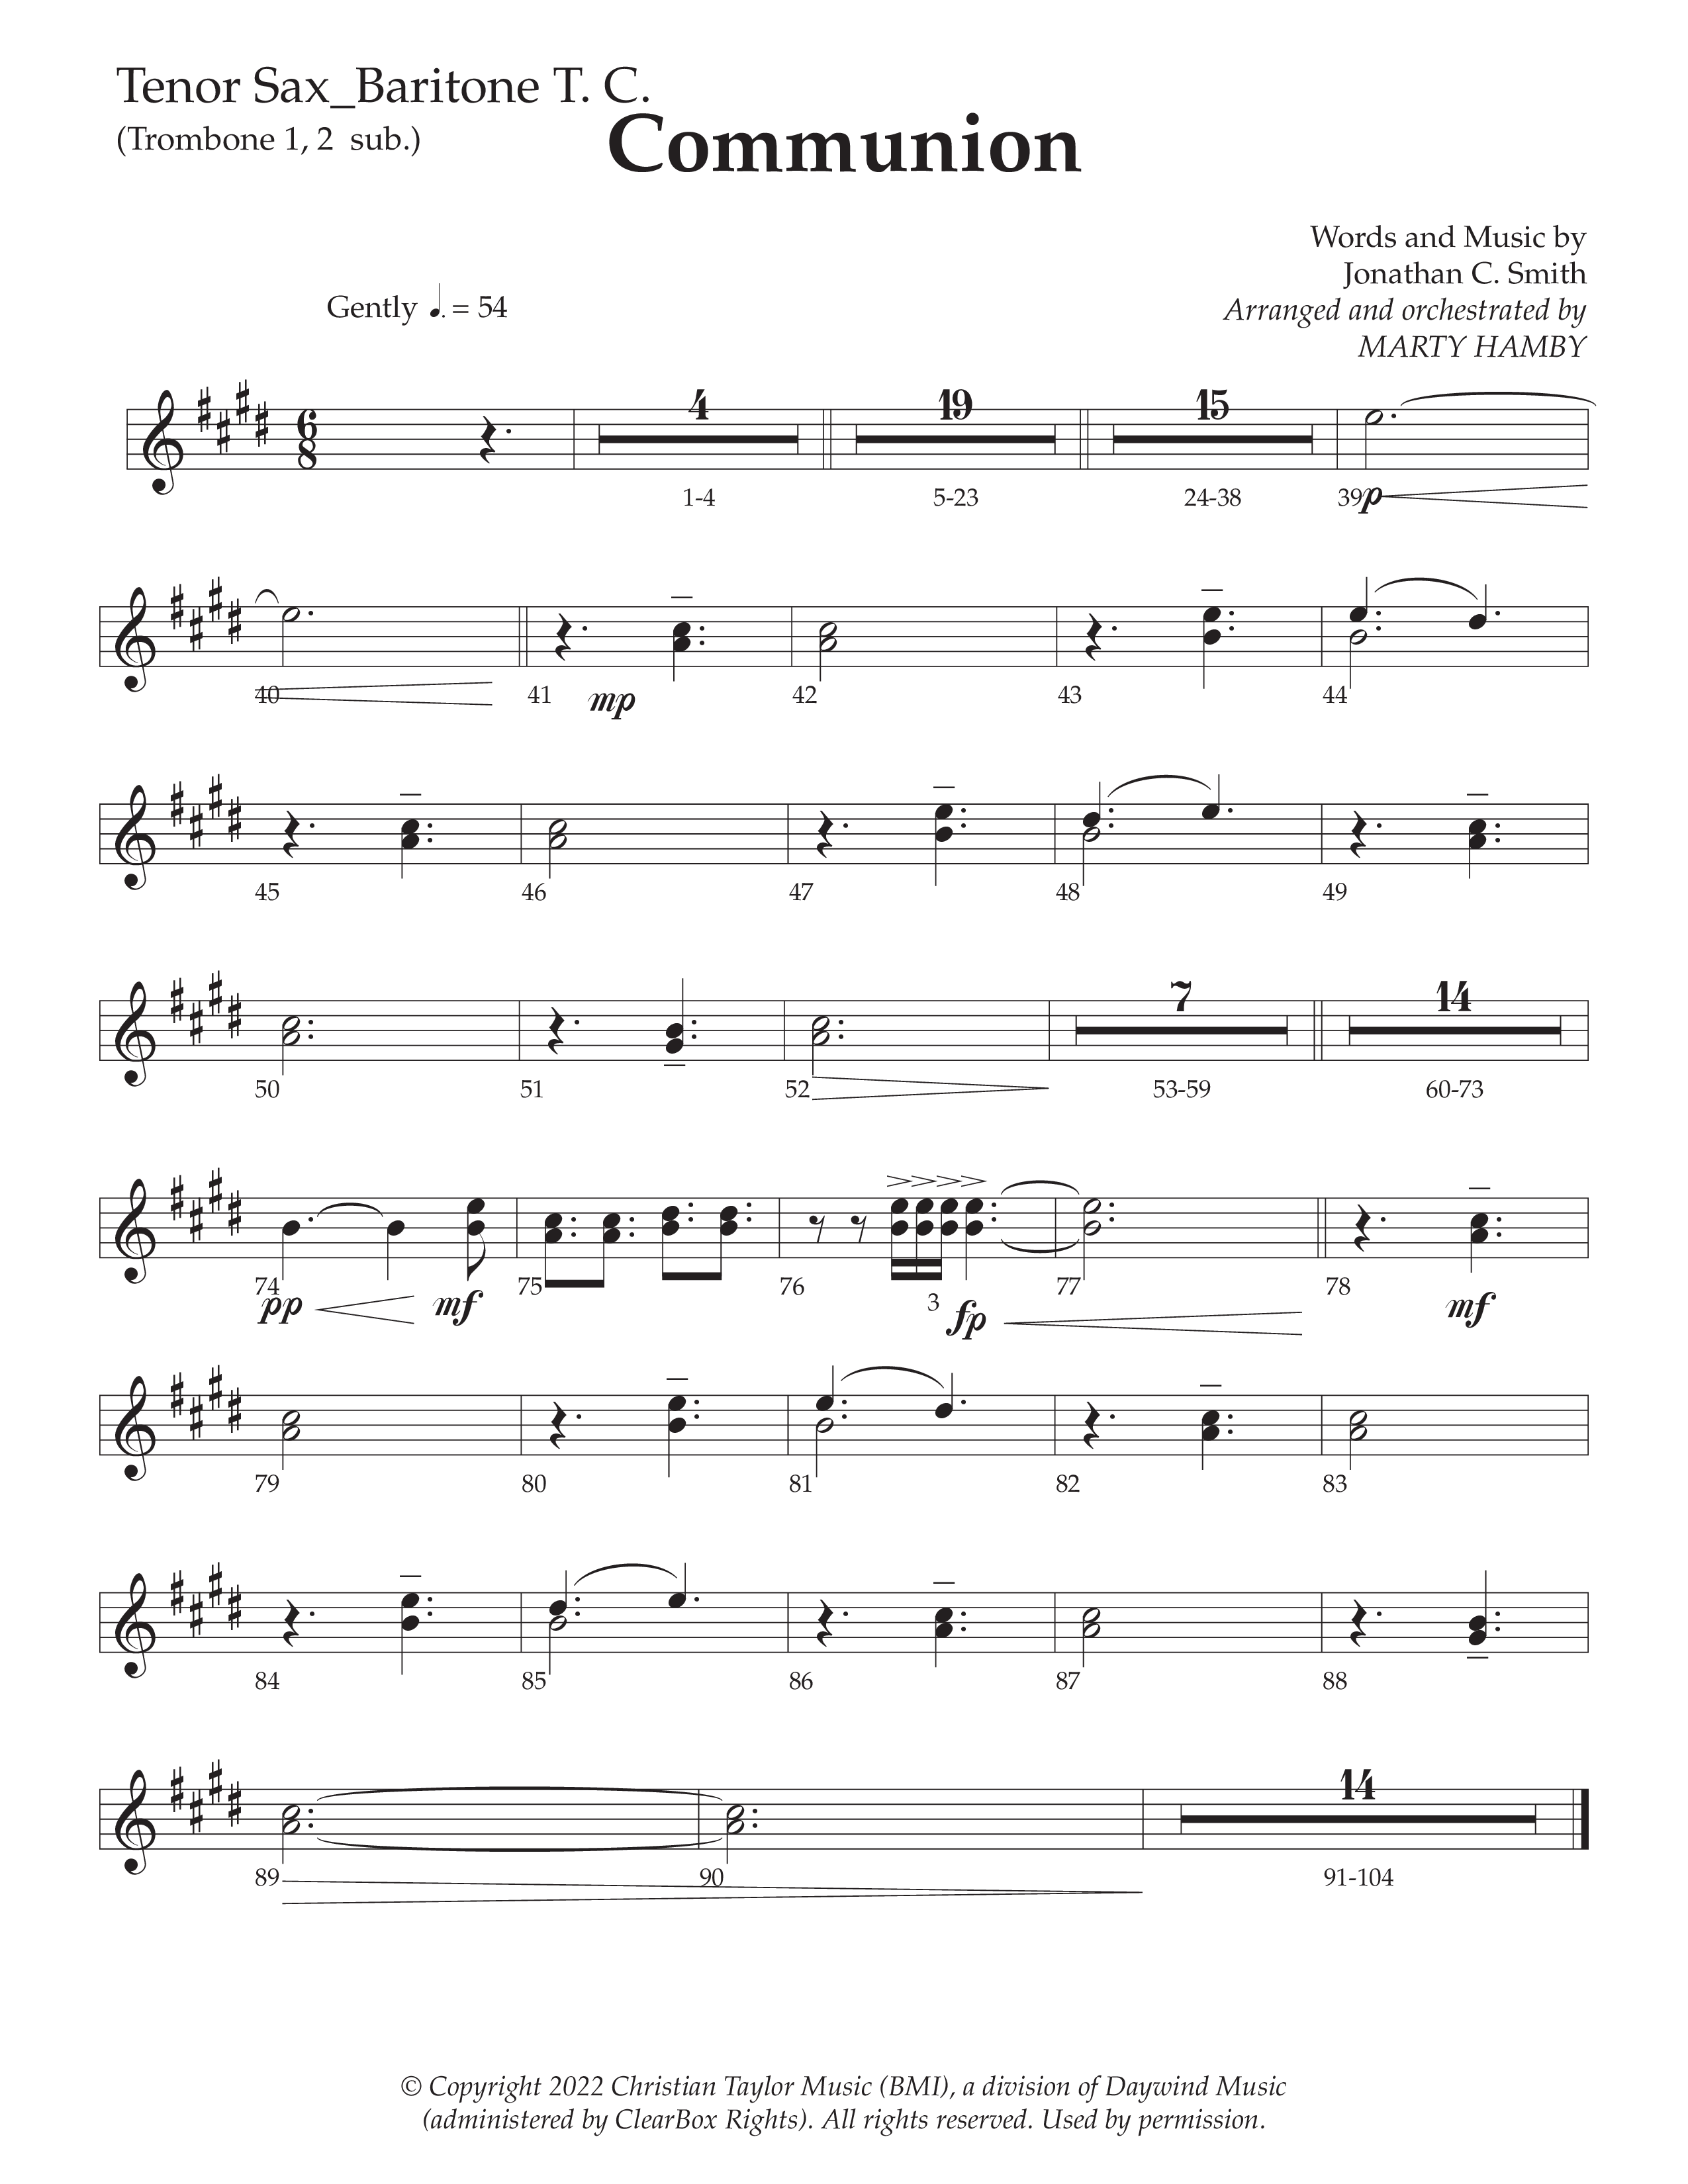 Communion (Choral Anthem SATB) Tenor Sax/Baritone T.C. (Daywind Worship / Arr. Marty Hamby)